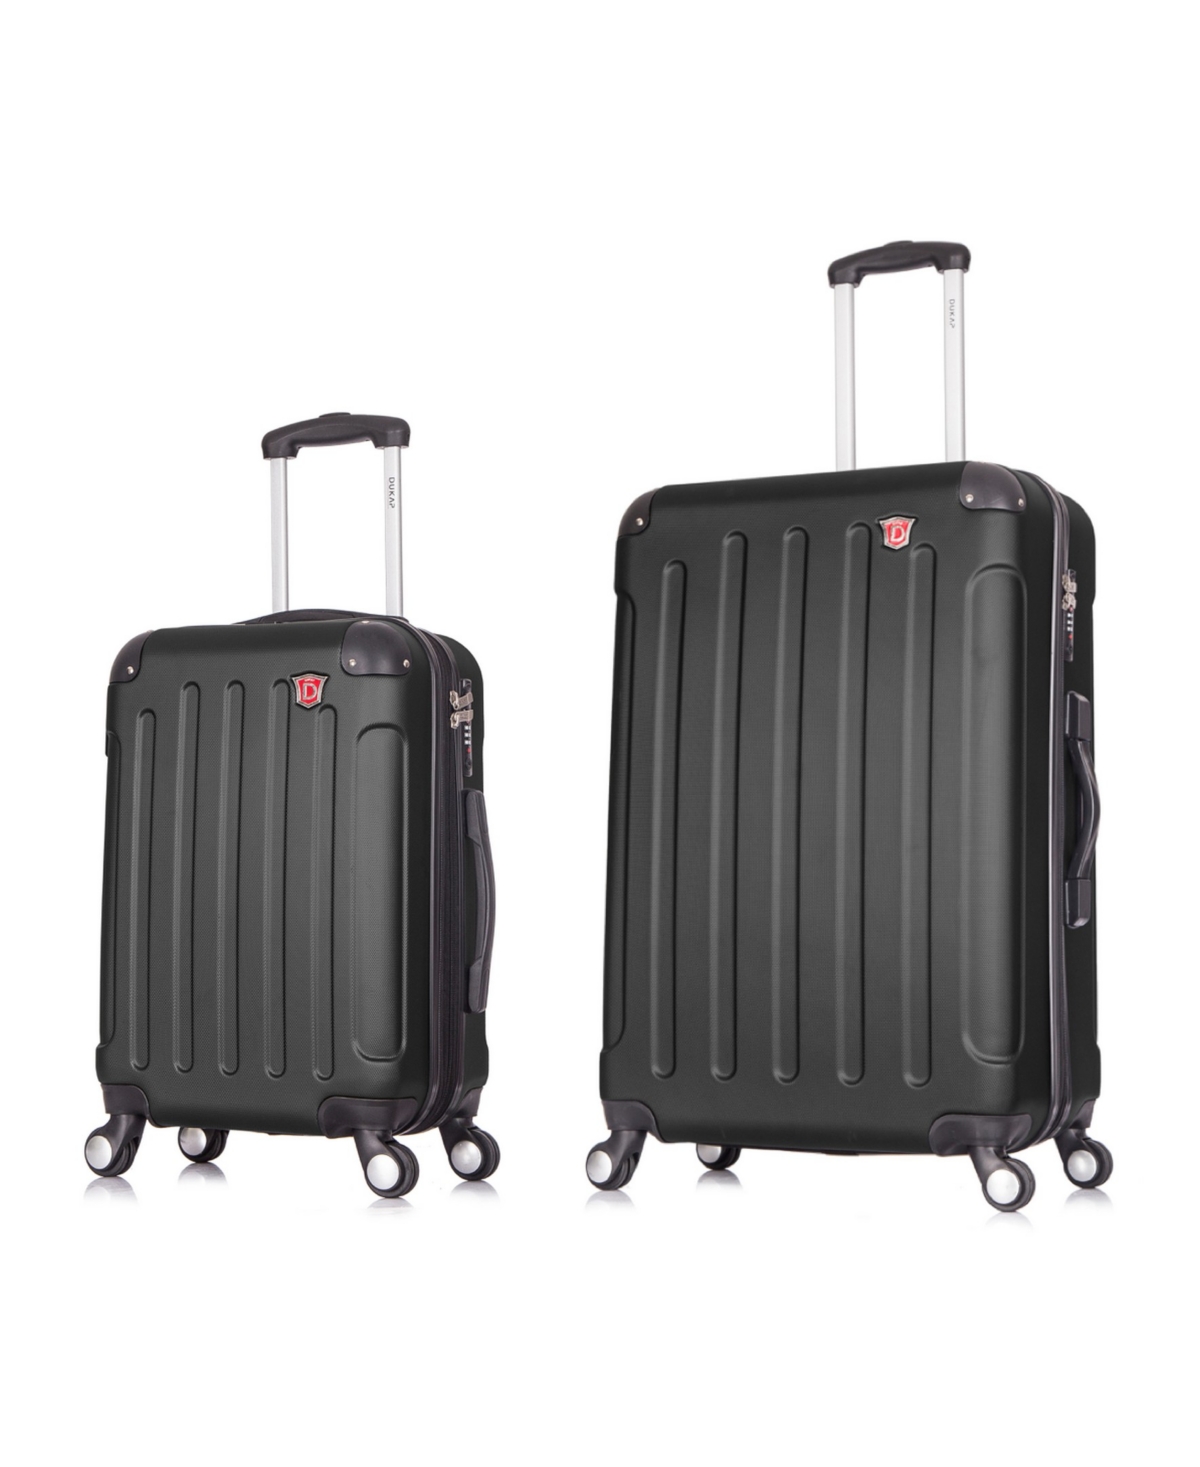 Intely 2-Pc. Hardside Luggage Set With Usb Port - Grey